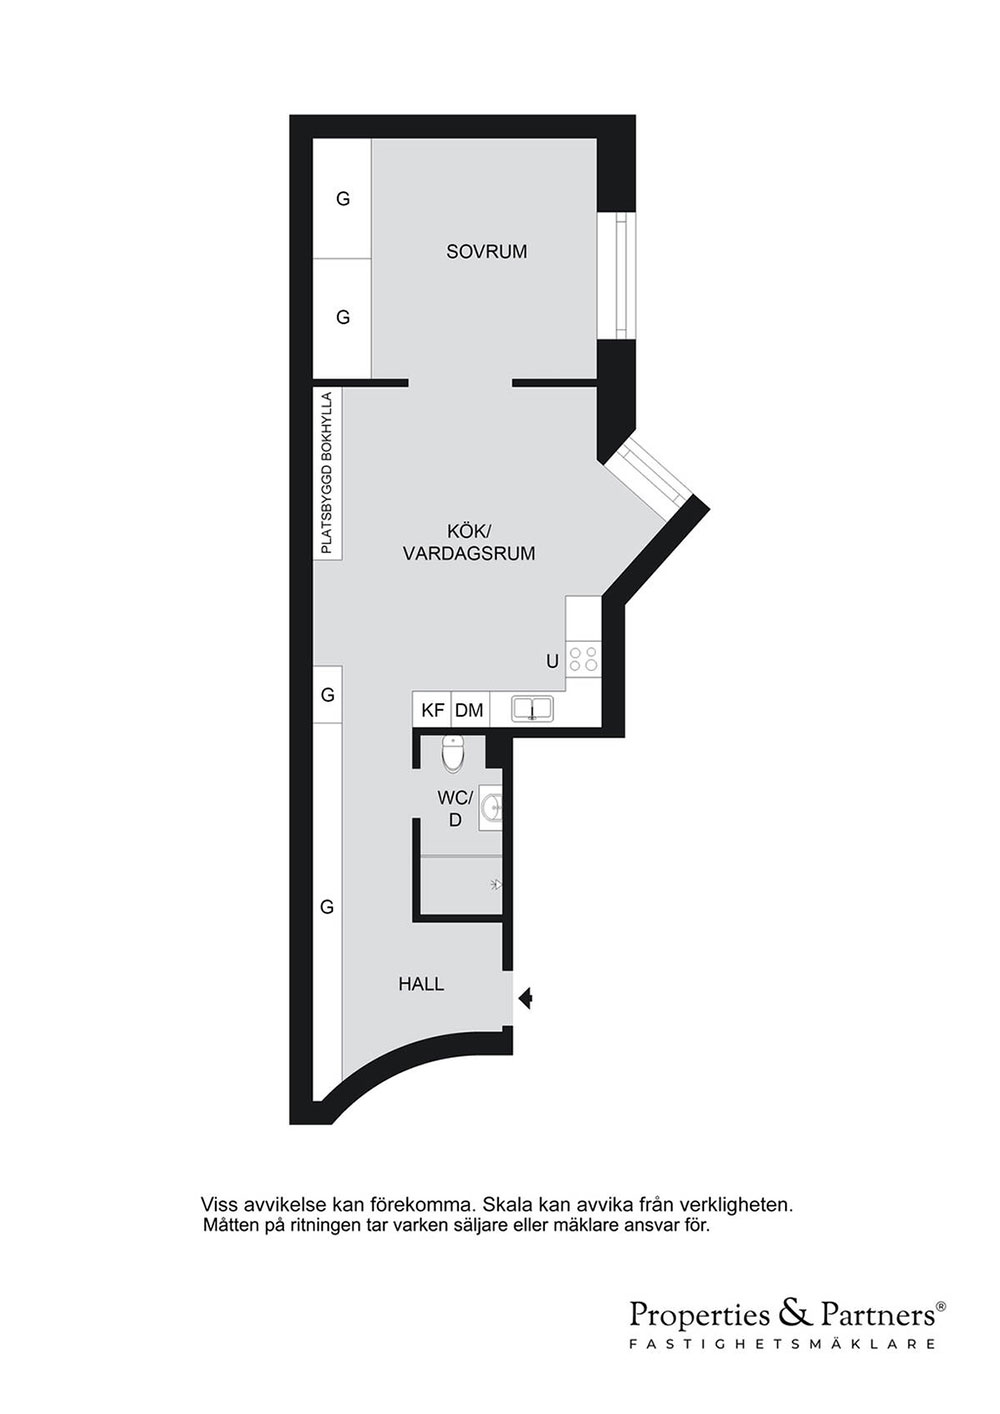 Стильный серый интерьер небольшой квартиры с проходной гостиной (39 кв. м)